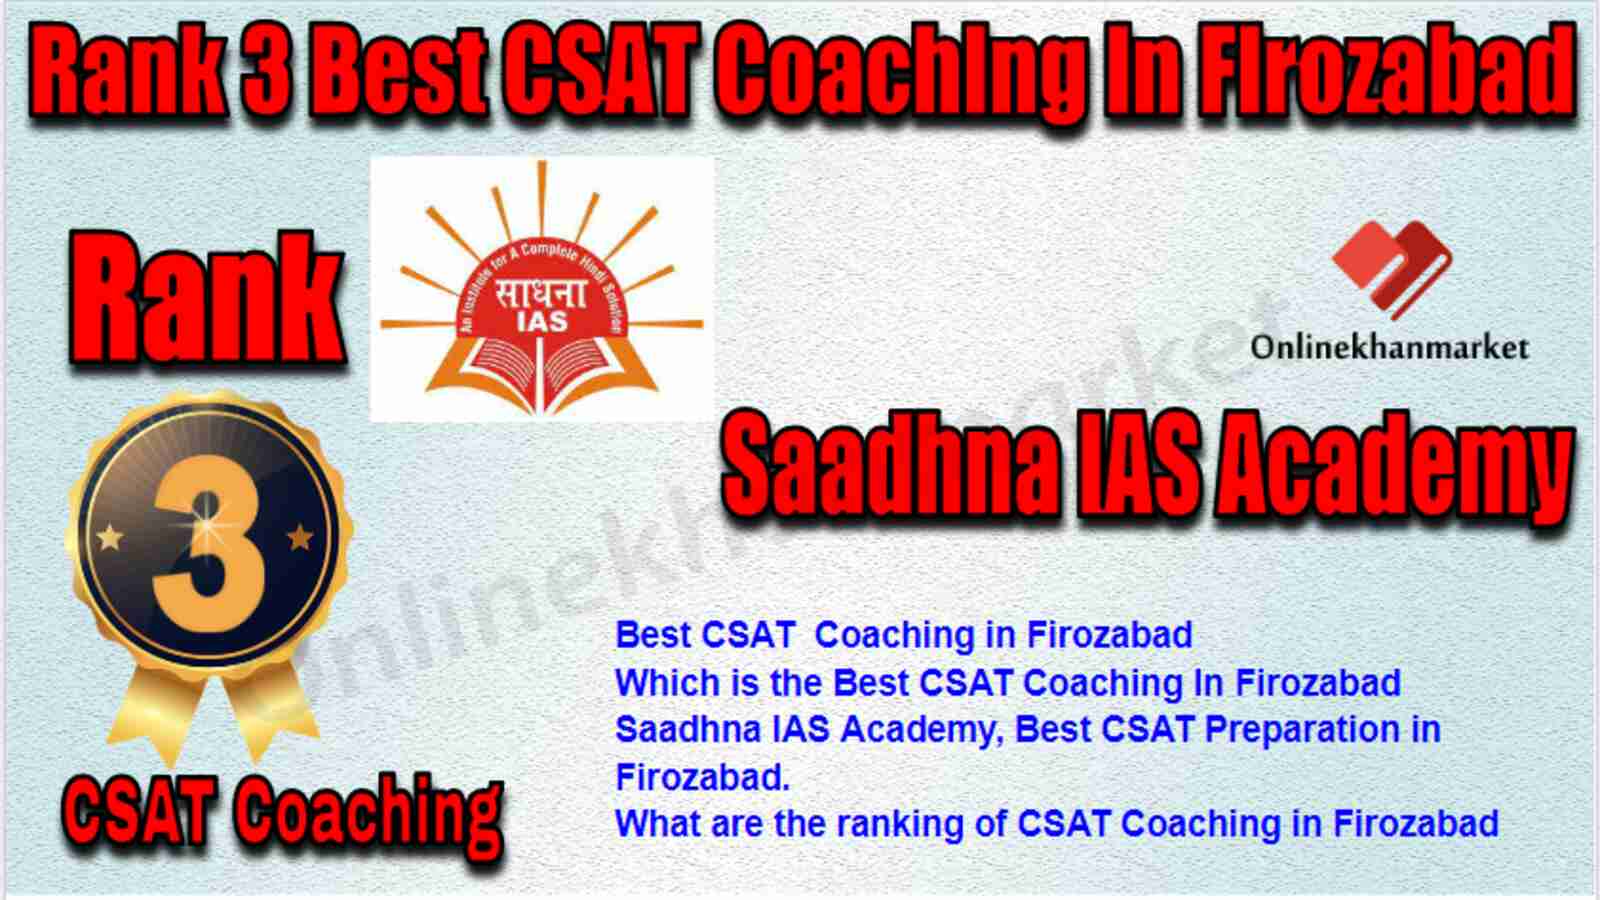 Rank 3 Best CSAT Coaching in Firozabad